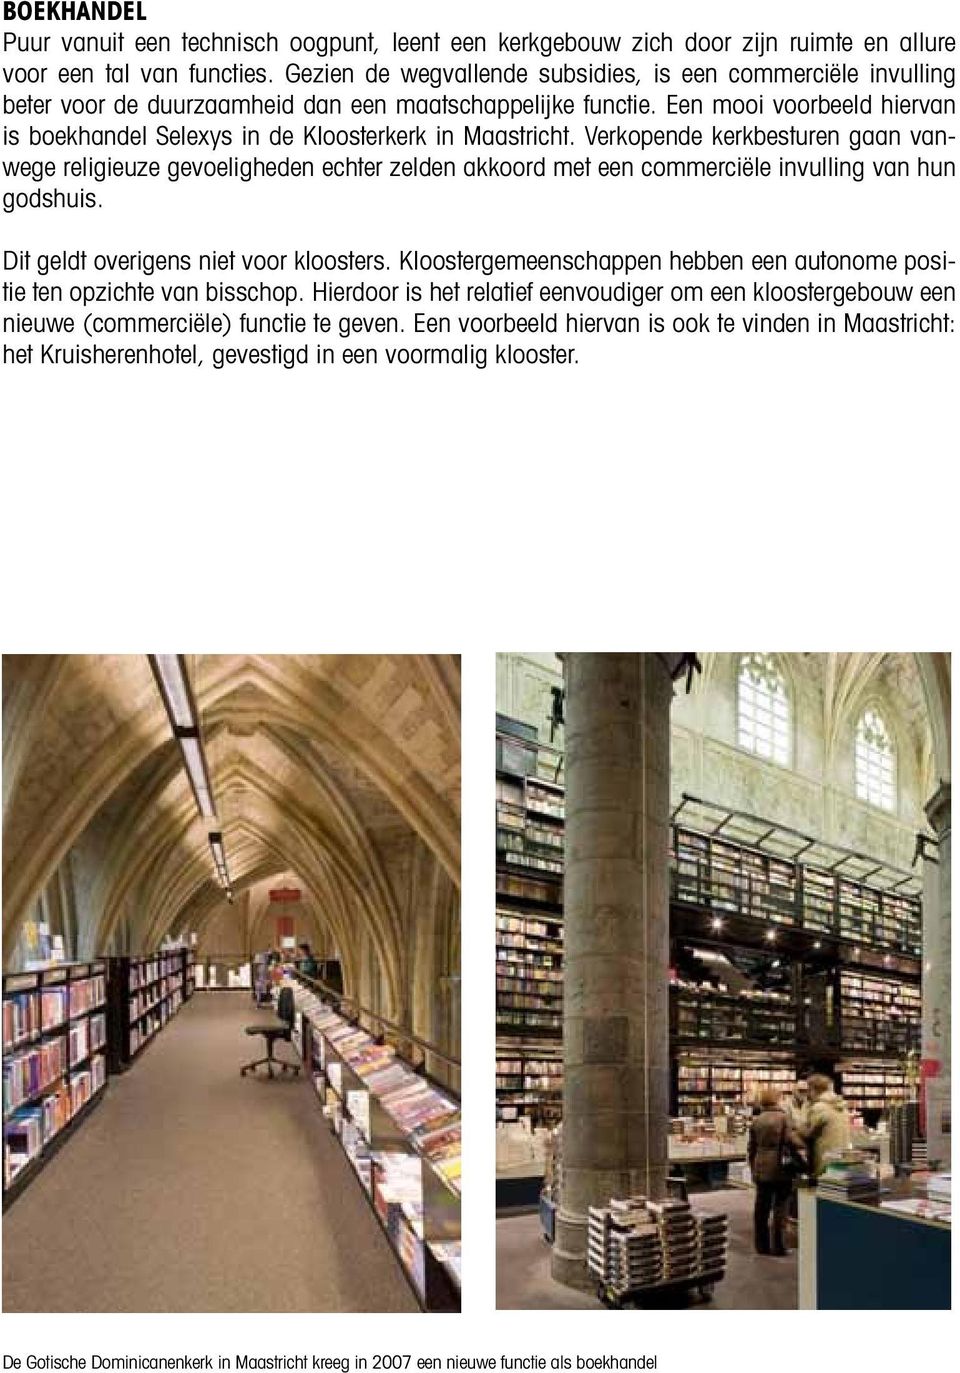 Een mooi voorbeeld hiervan is boekhandel Selexys in de Kloosterkerk in Maastricht.